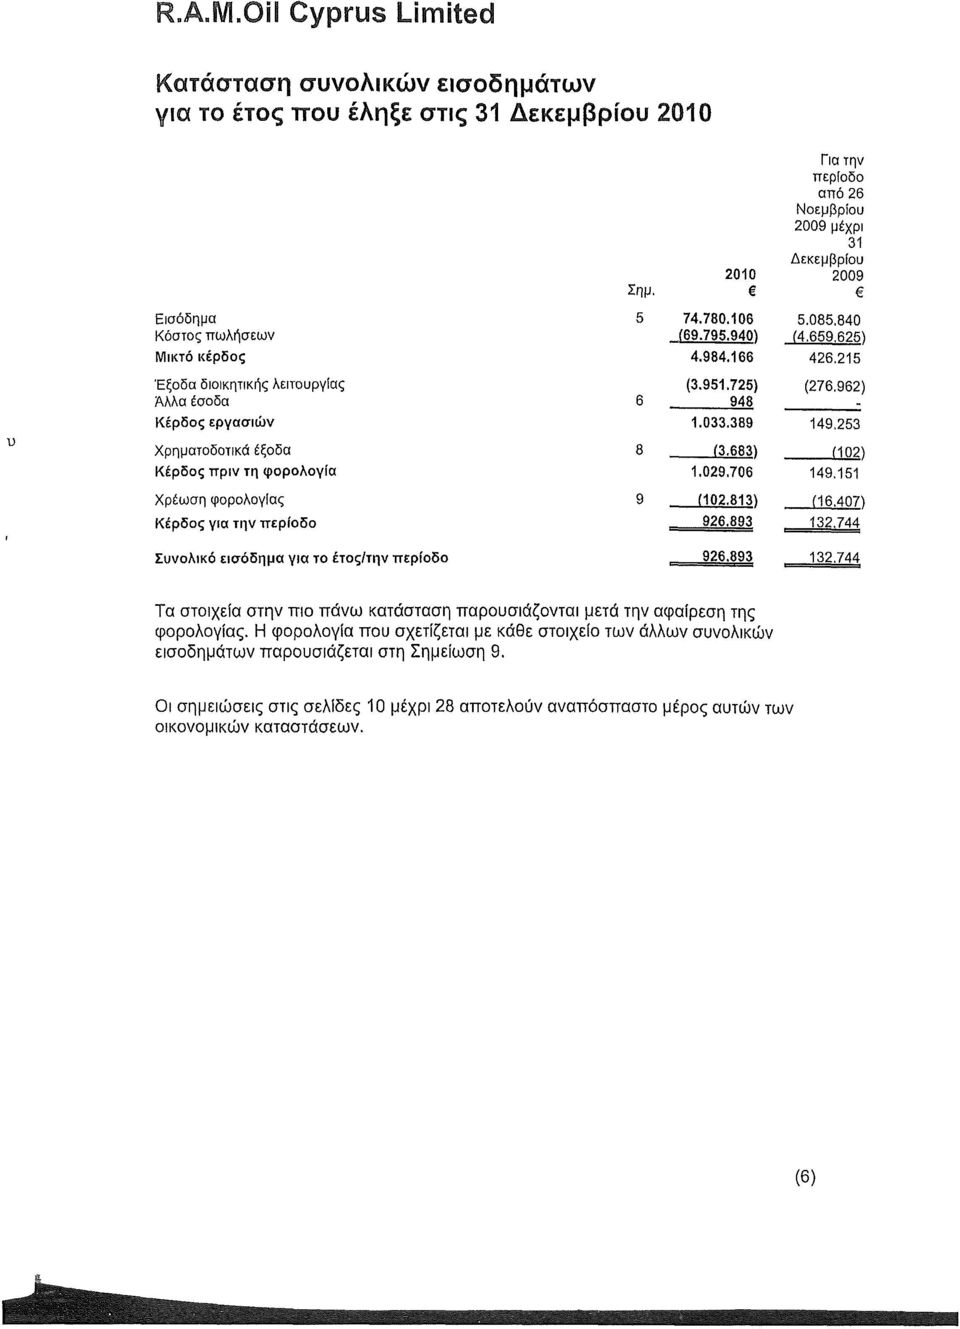 215 Έξοδα διοικητικής λειτουργίας Λλλα έσοδα Κέρδος εργασιών (3.951.725) 948 1.033.389 (276.962) 149,253 Χρηματοδοτικά έξοδα Κέρδος πριν τη φορολογία (3.683) 1.029.706 (102) 149.